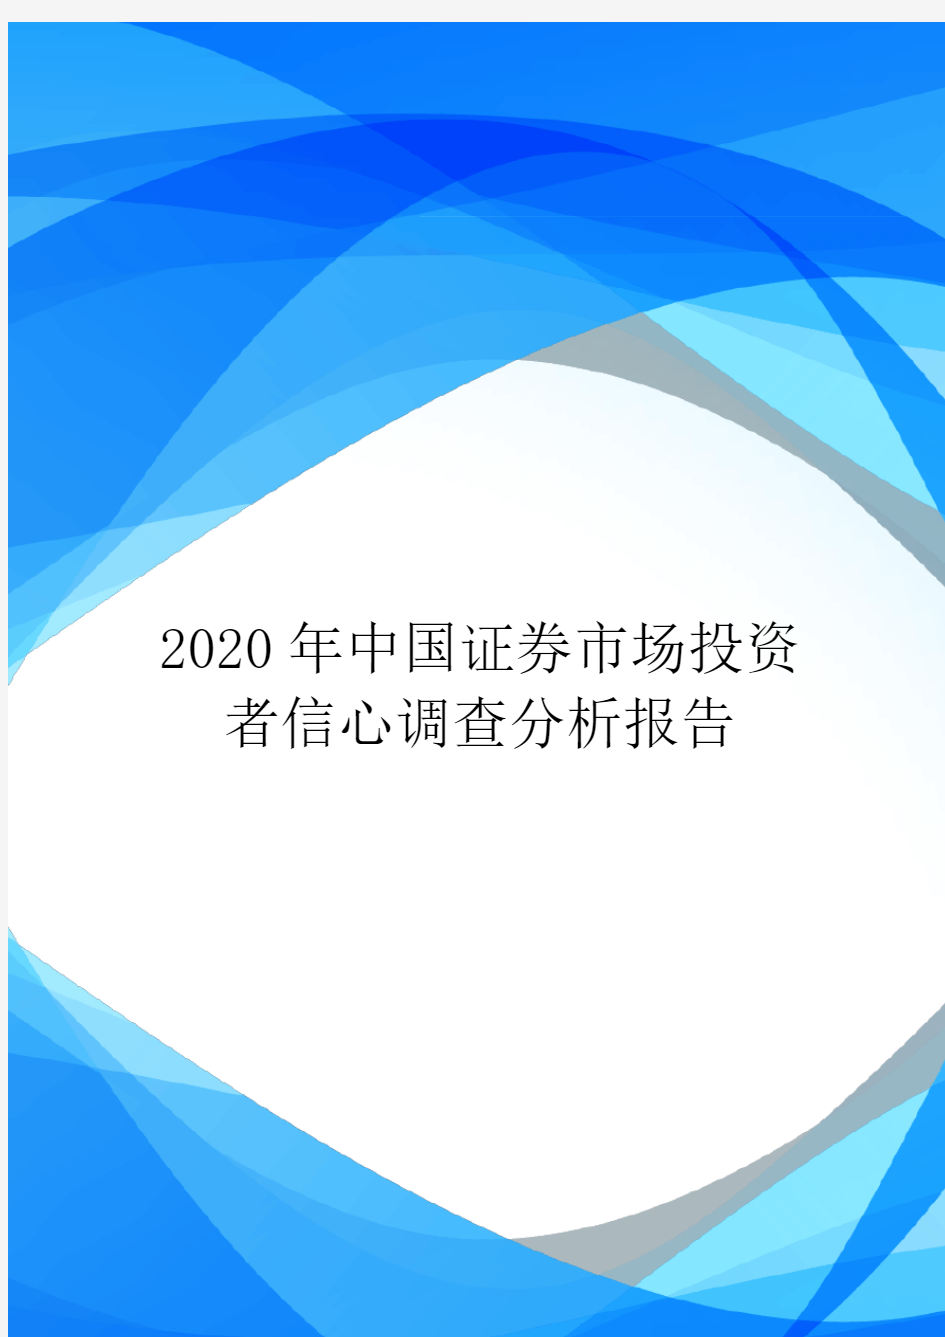 2020年中国证券市场投资者信心调查分析报告.doc